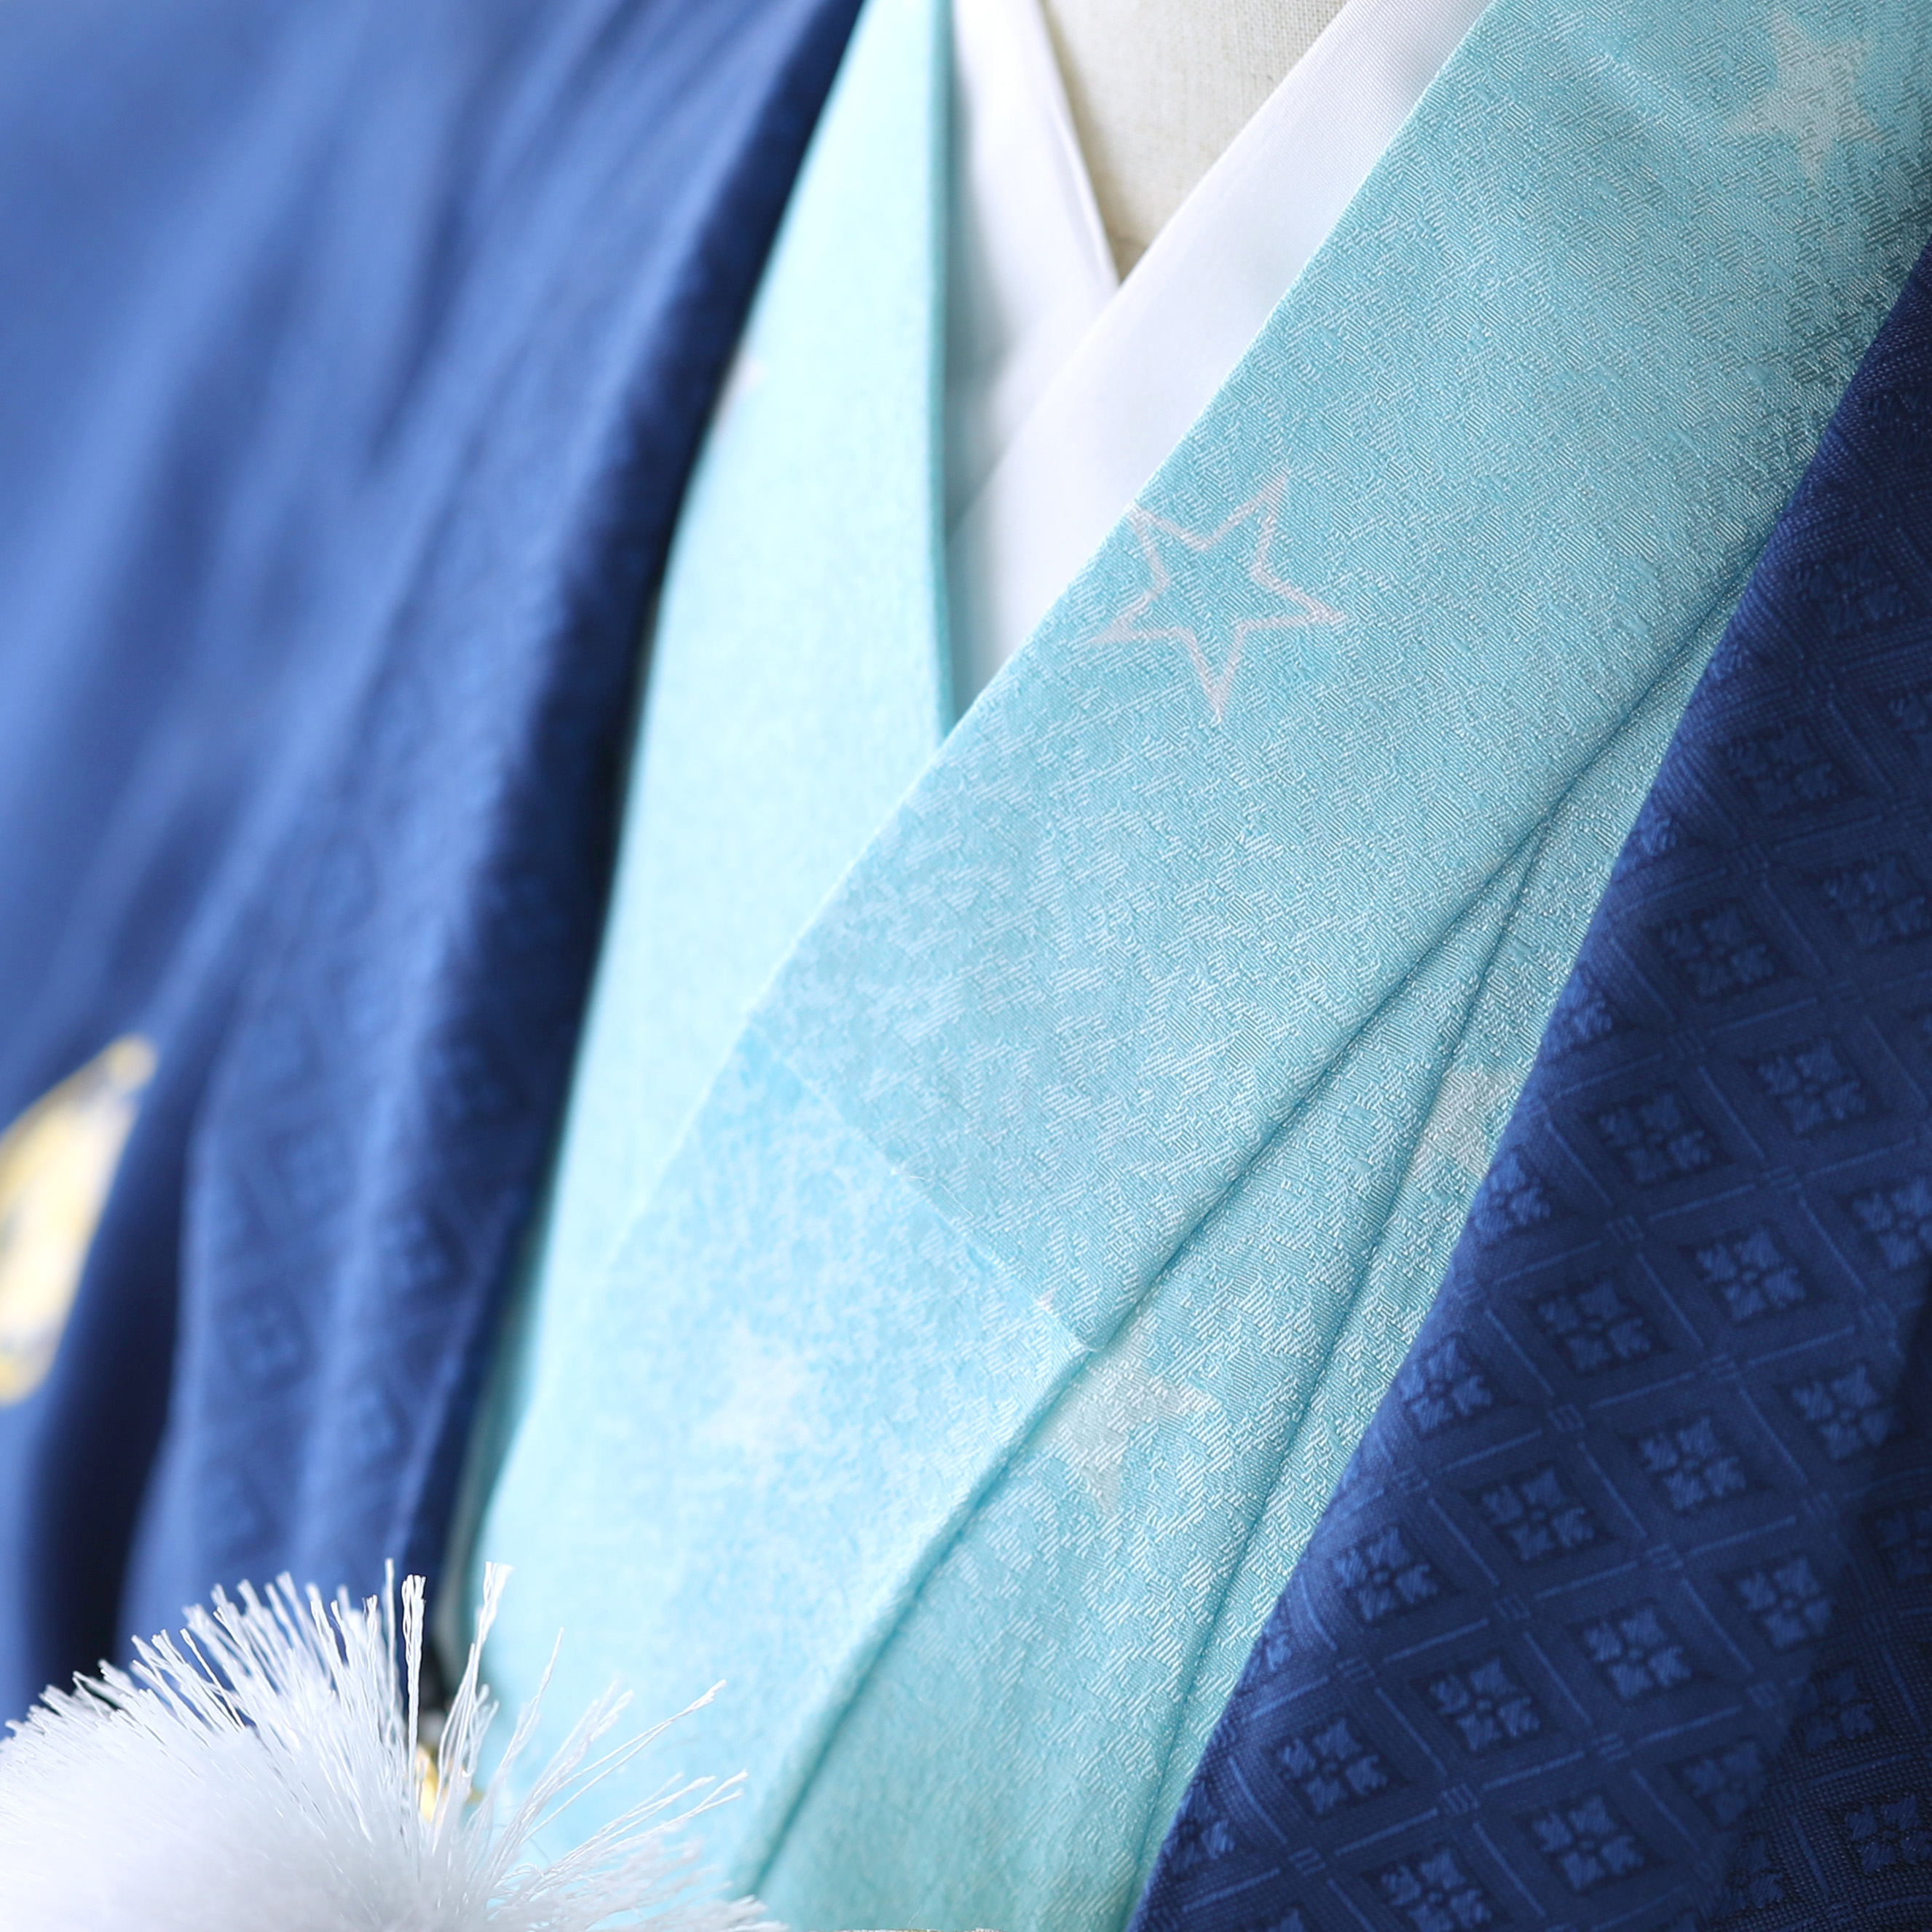 中の着物は水色をベースに星柄模様が描かれています。